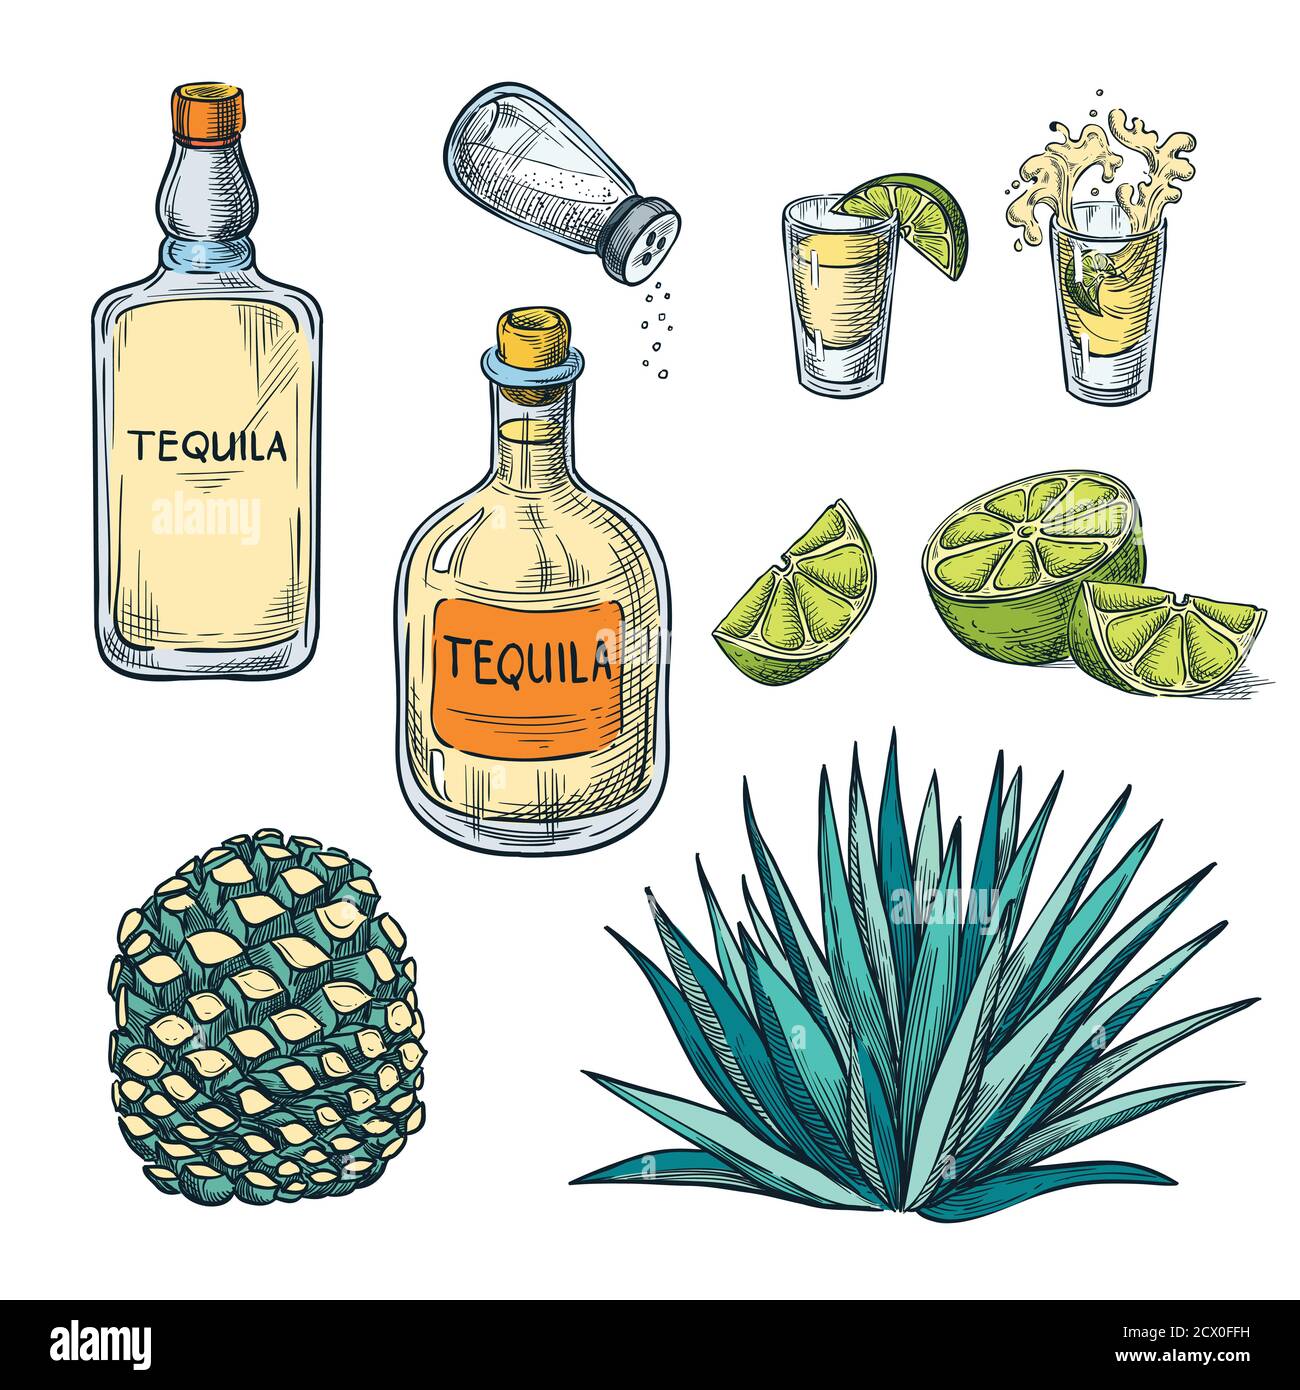 Bottiglia di tequila, bicchiere per shot e ingredienti di radice di agave, illustrazione dello schizzo a colori vettoriali. Elementi di design del menu delle bevande alcoliche messicane. Illustrazione Vettoriale